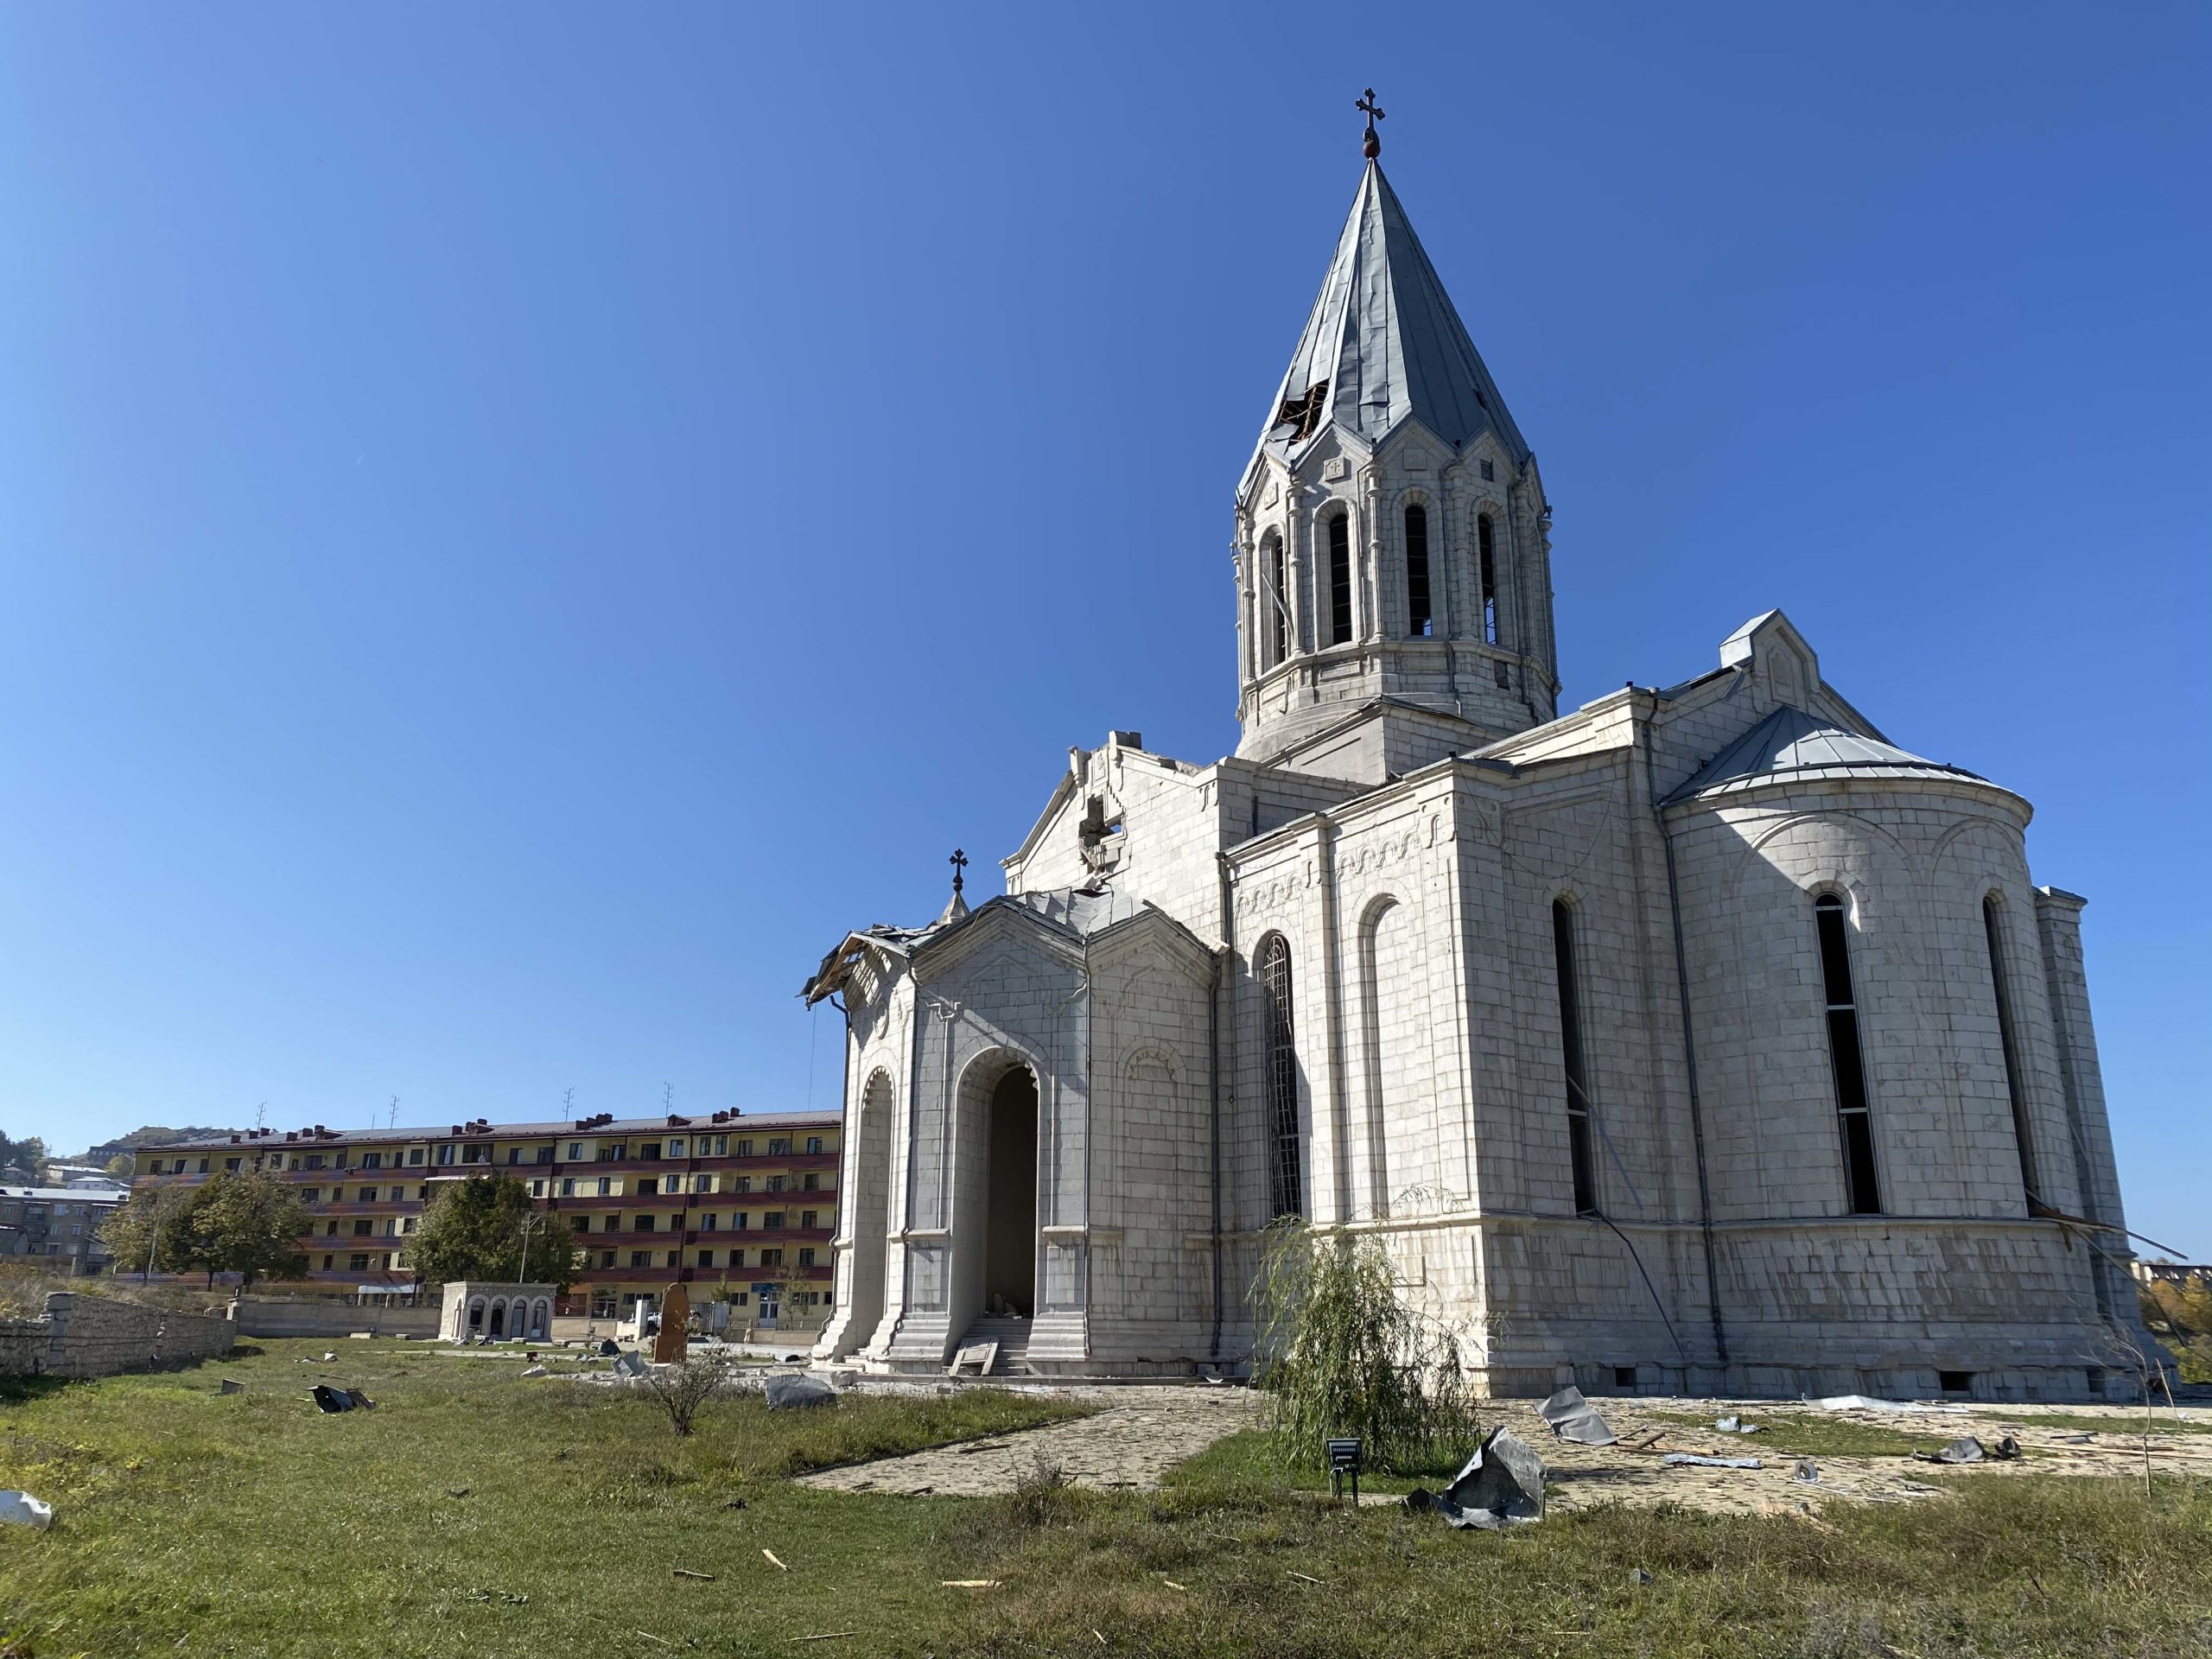 Եվրոպական հանձնաժողովը դատապարտում է Ադրբեջանի կողմից Ղազանչեցոց եկեղեցու ռմբակոծումը